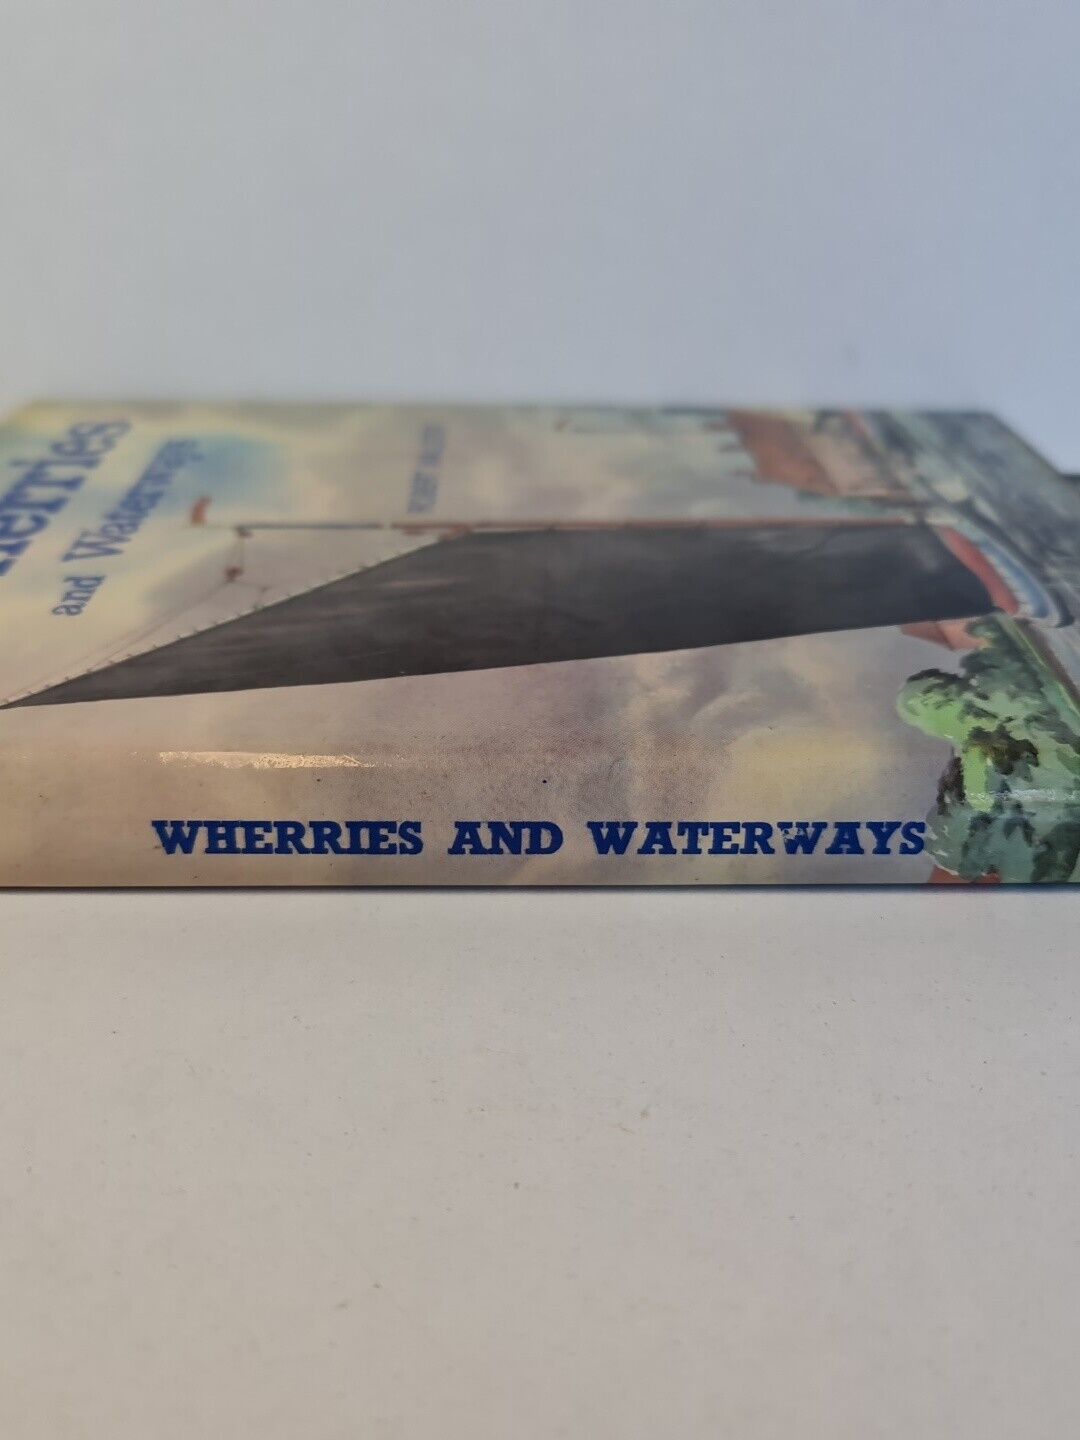 Wherries and Waterways by Robert Malster (1978)